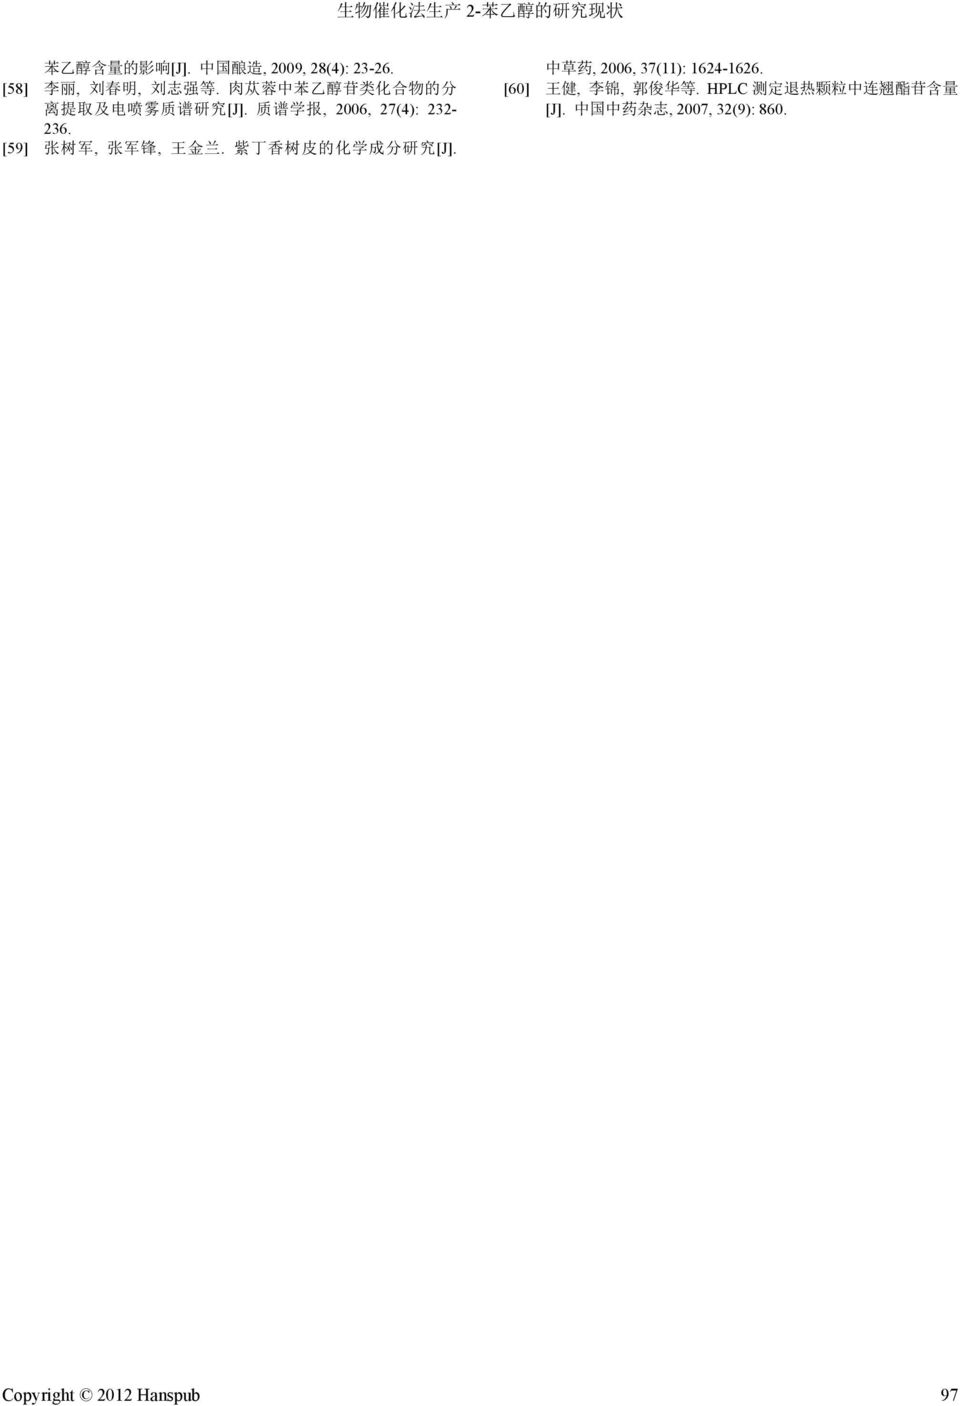 [59] 张 树 军, 张 军 锋, 王 金 兰. 紫 丁 香 树 皮 的 化 学 成 分 研 究 [J]. 中 草 药, 2006, 37(11): 1624-1626.